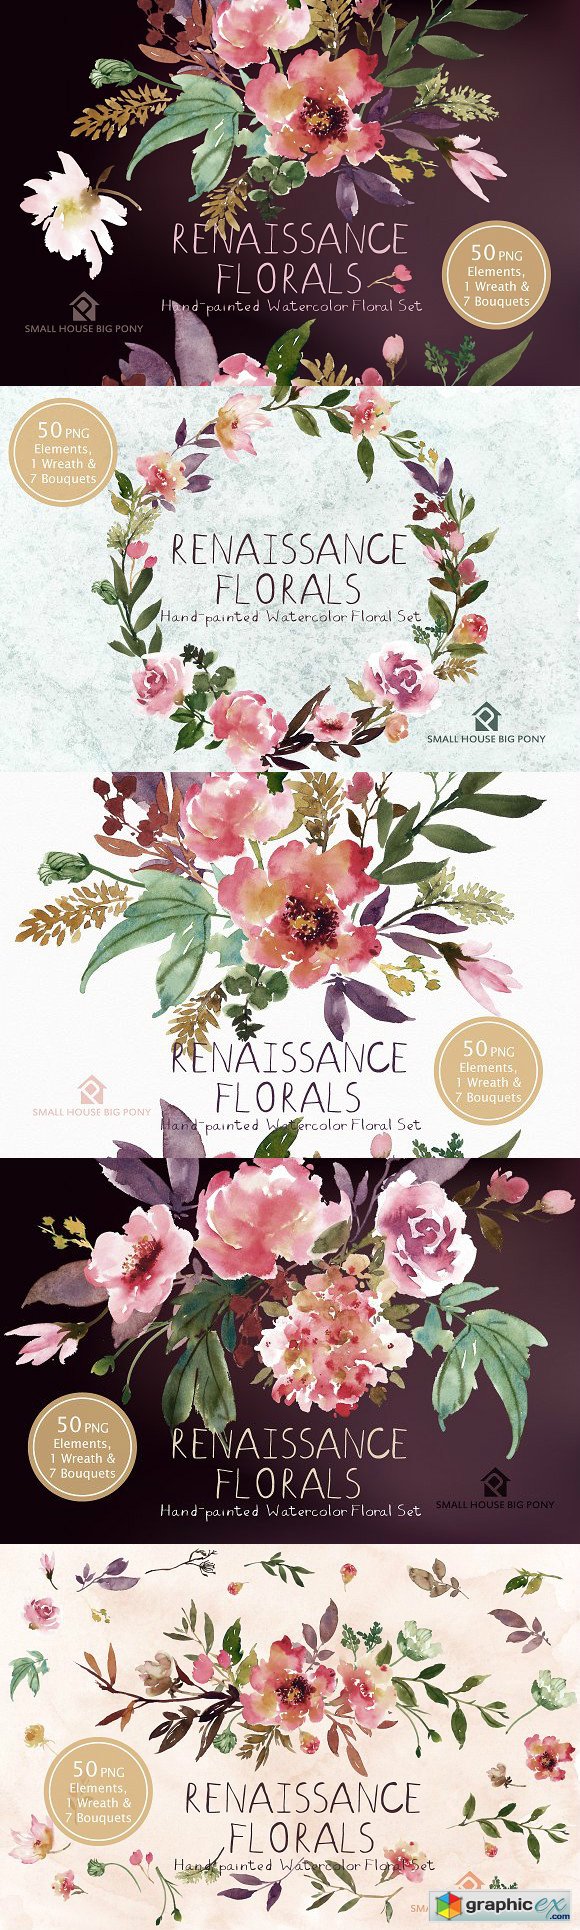 Renaissance Florals - Watercolor Set